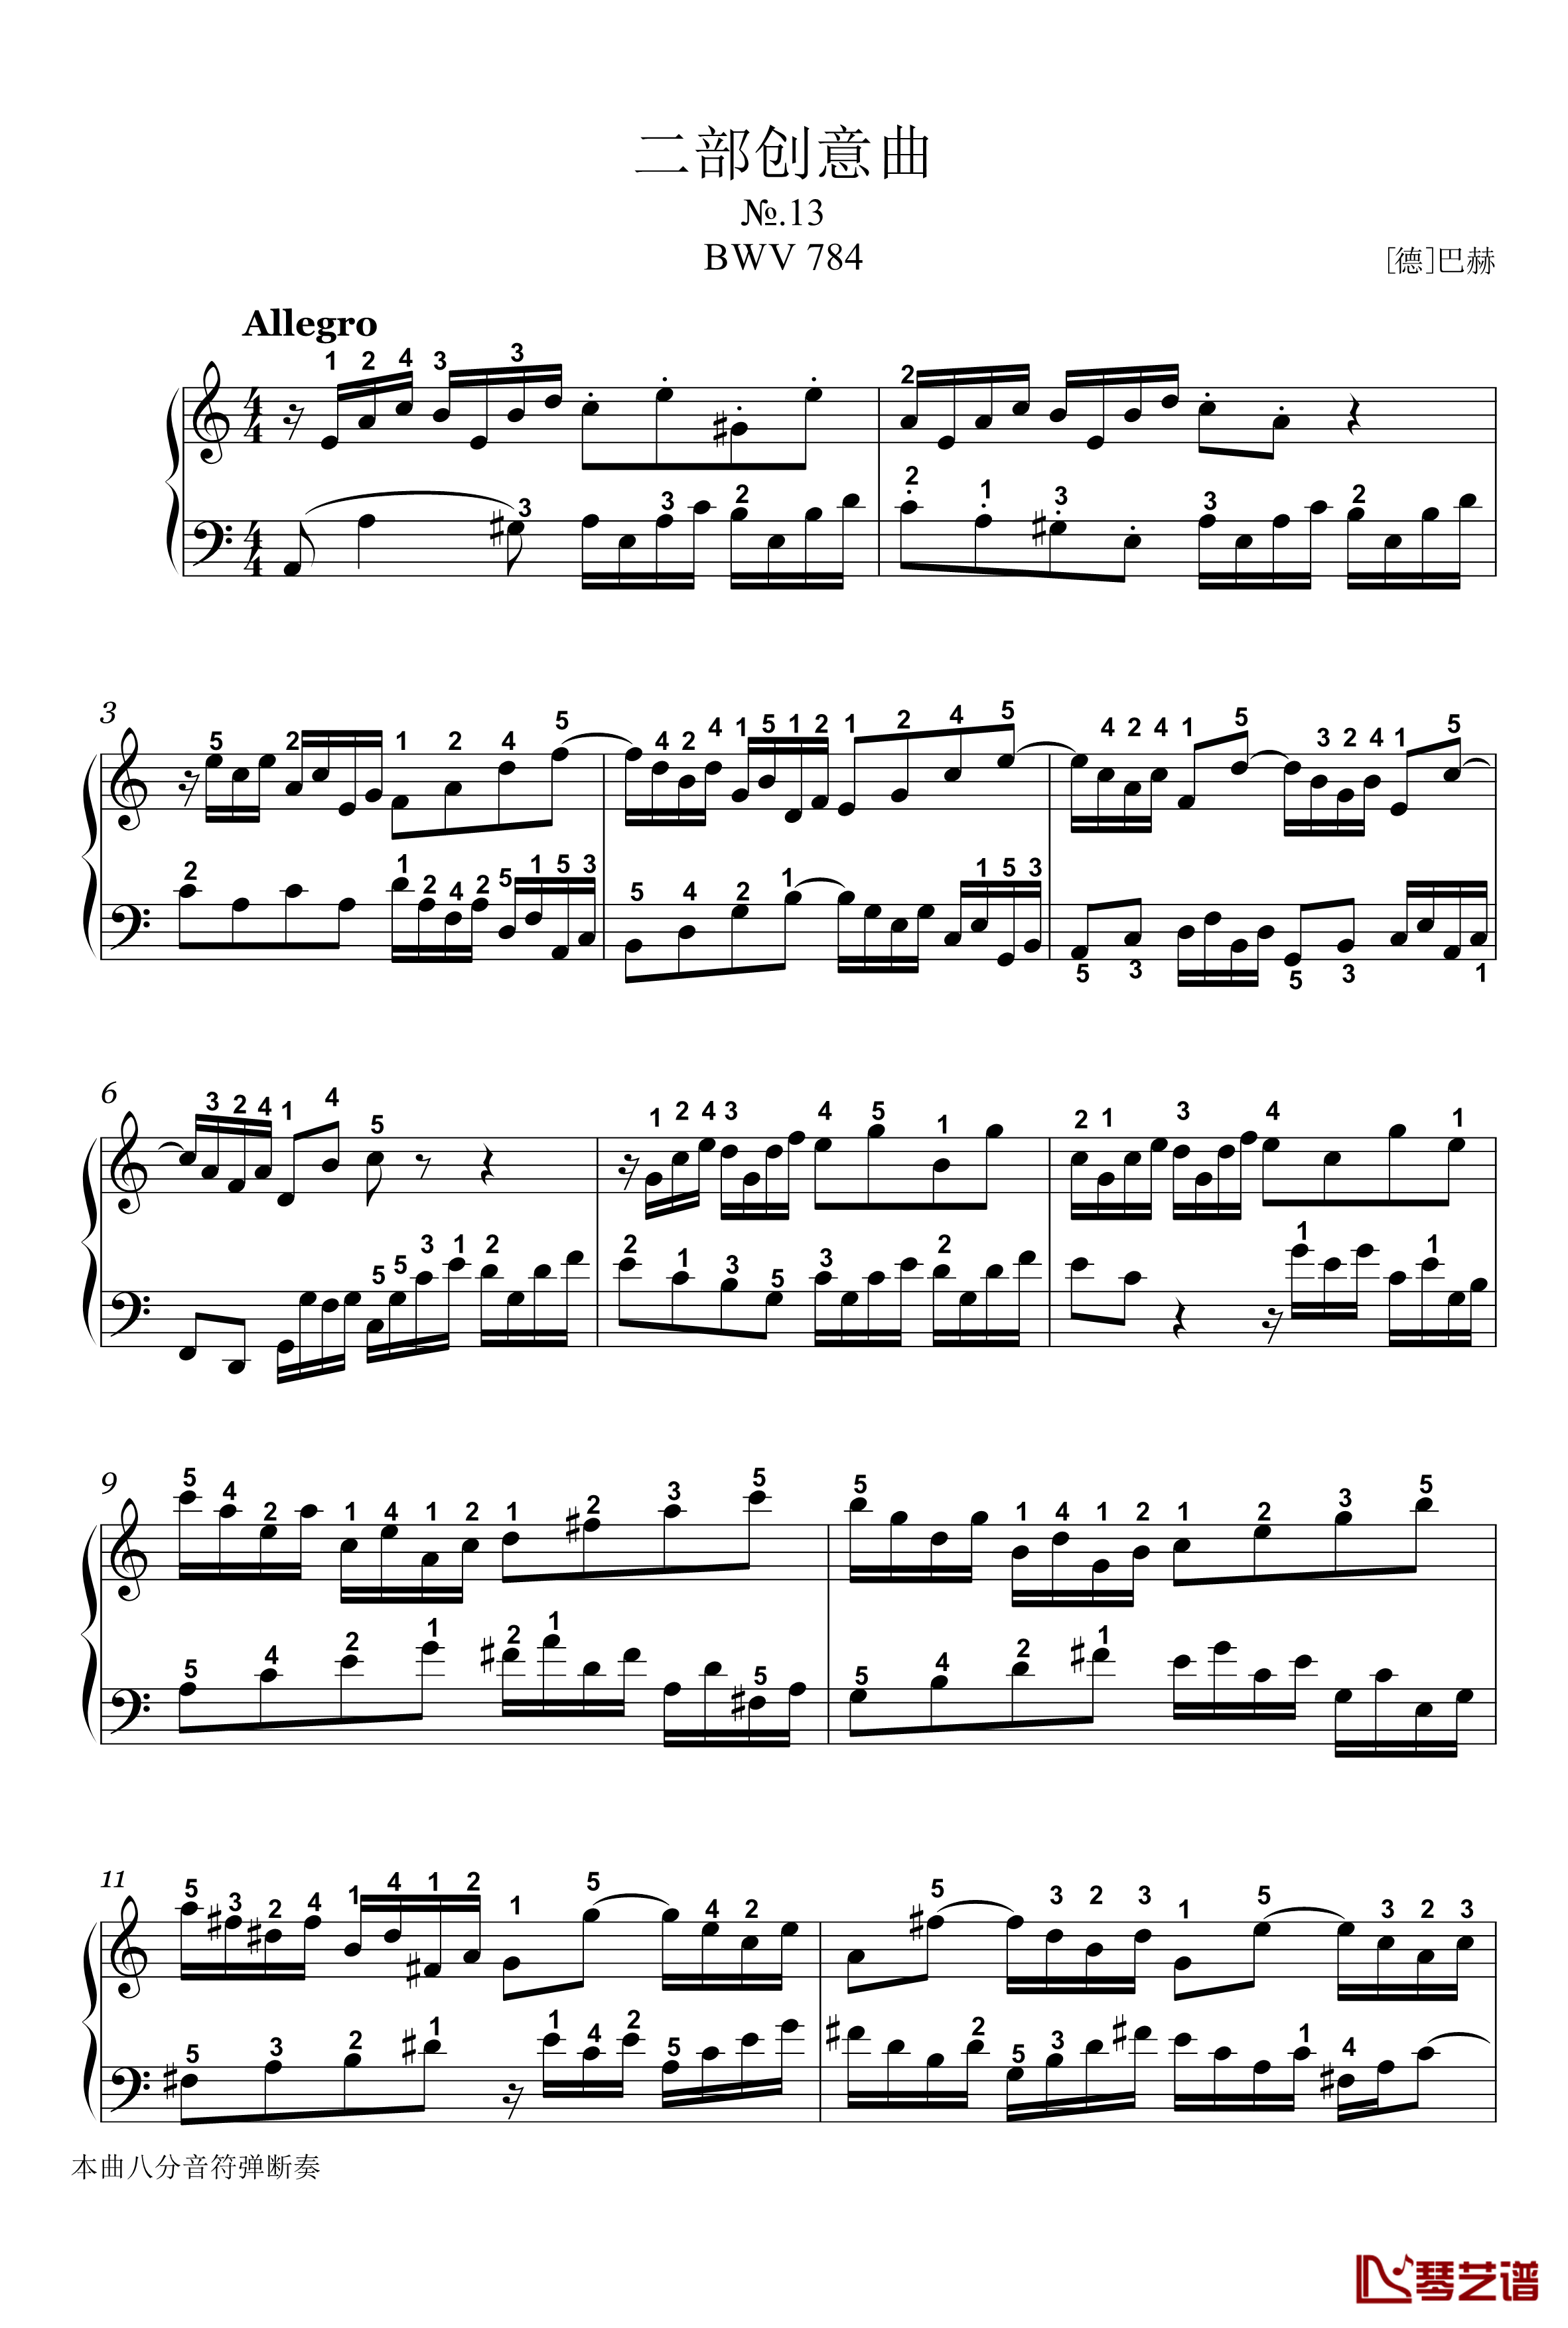 二部创意曲钢琴谱-13-bwv784-详细指法-巴赫-P.E.Bach1